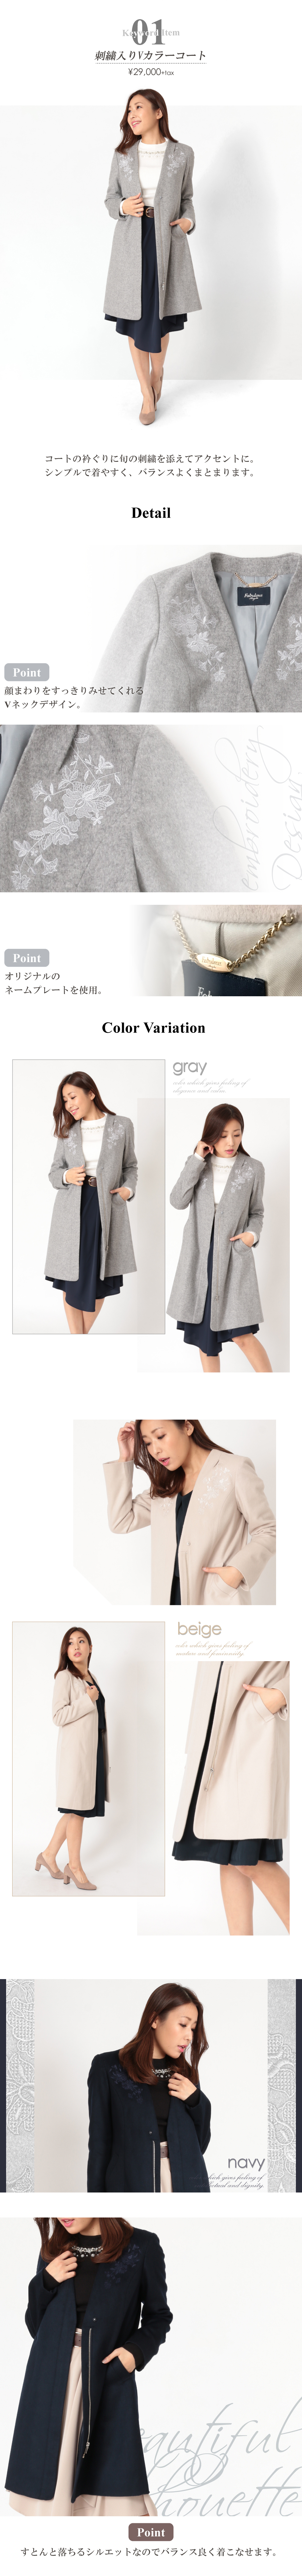 刺繍入りVカラーコート。コートの衿ぐりに旬の刺繍を添えてアクセントに。シンプルで着やすく、バランスよくまとまります。